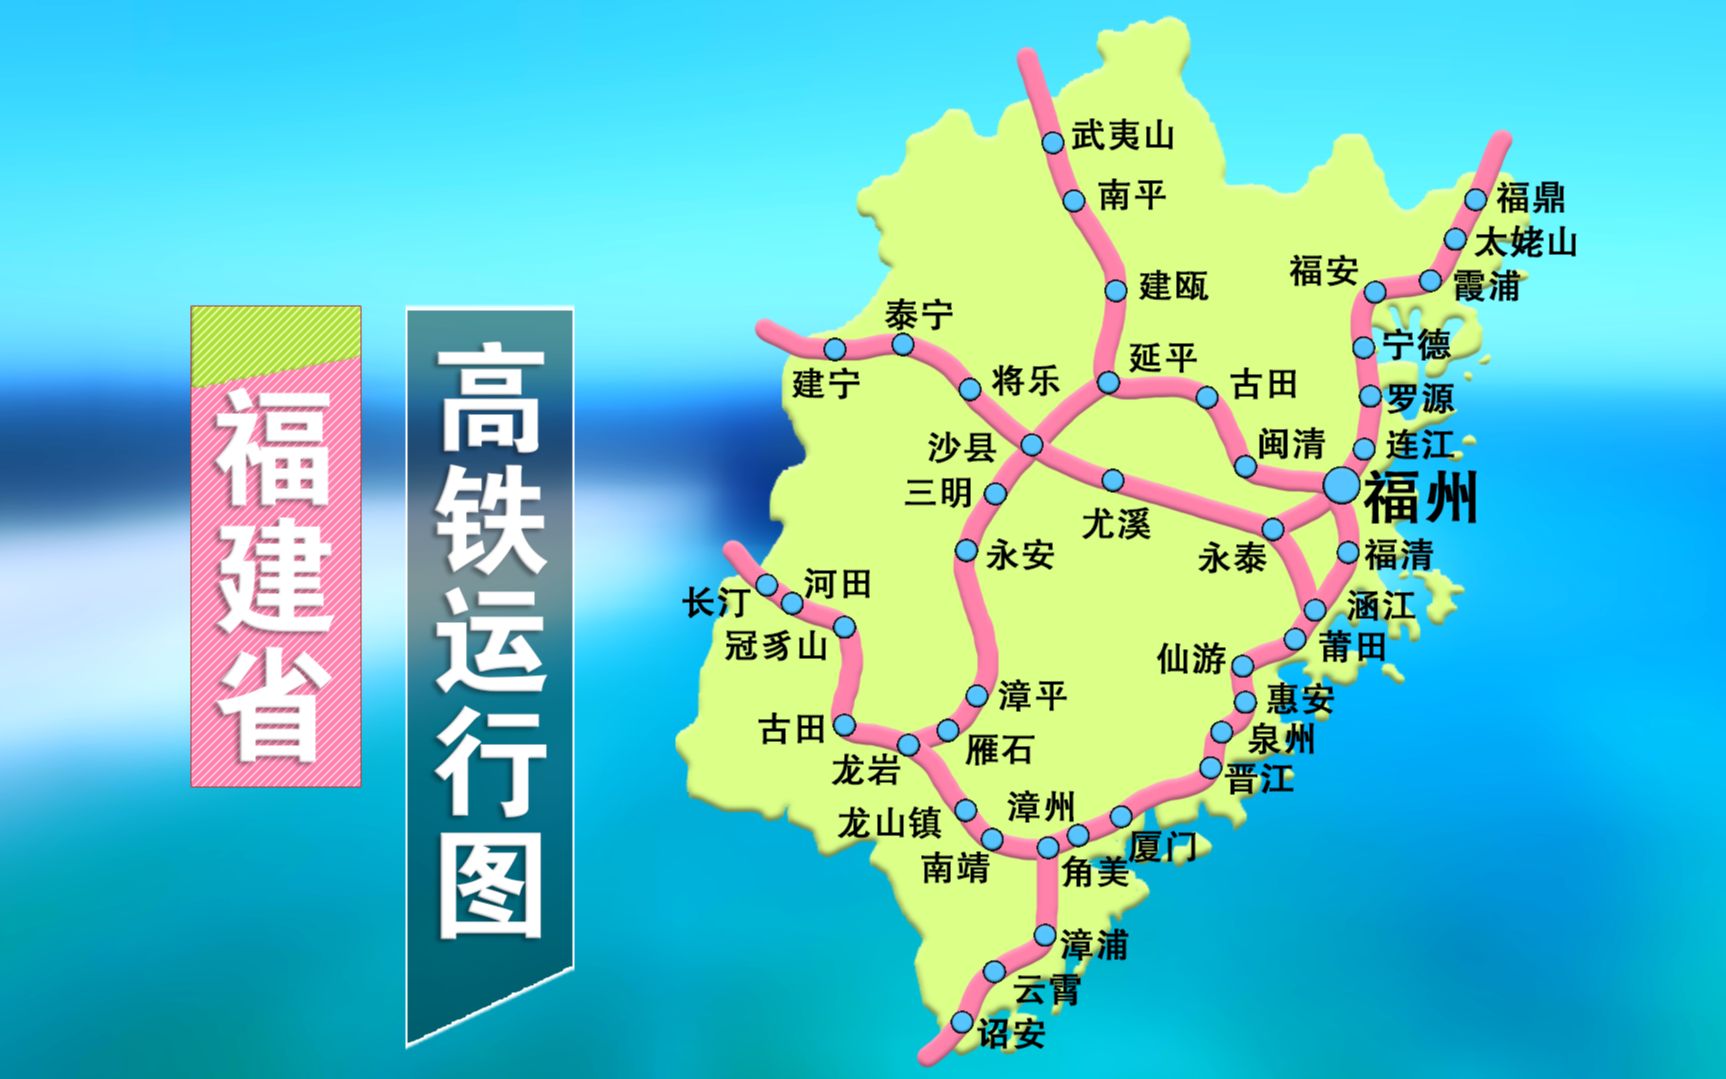 福银高铁福建段线路图图片